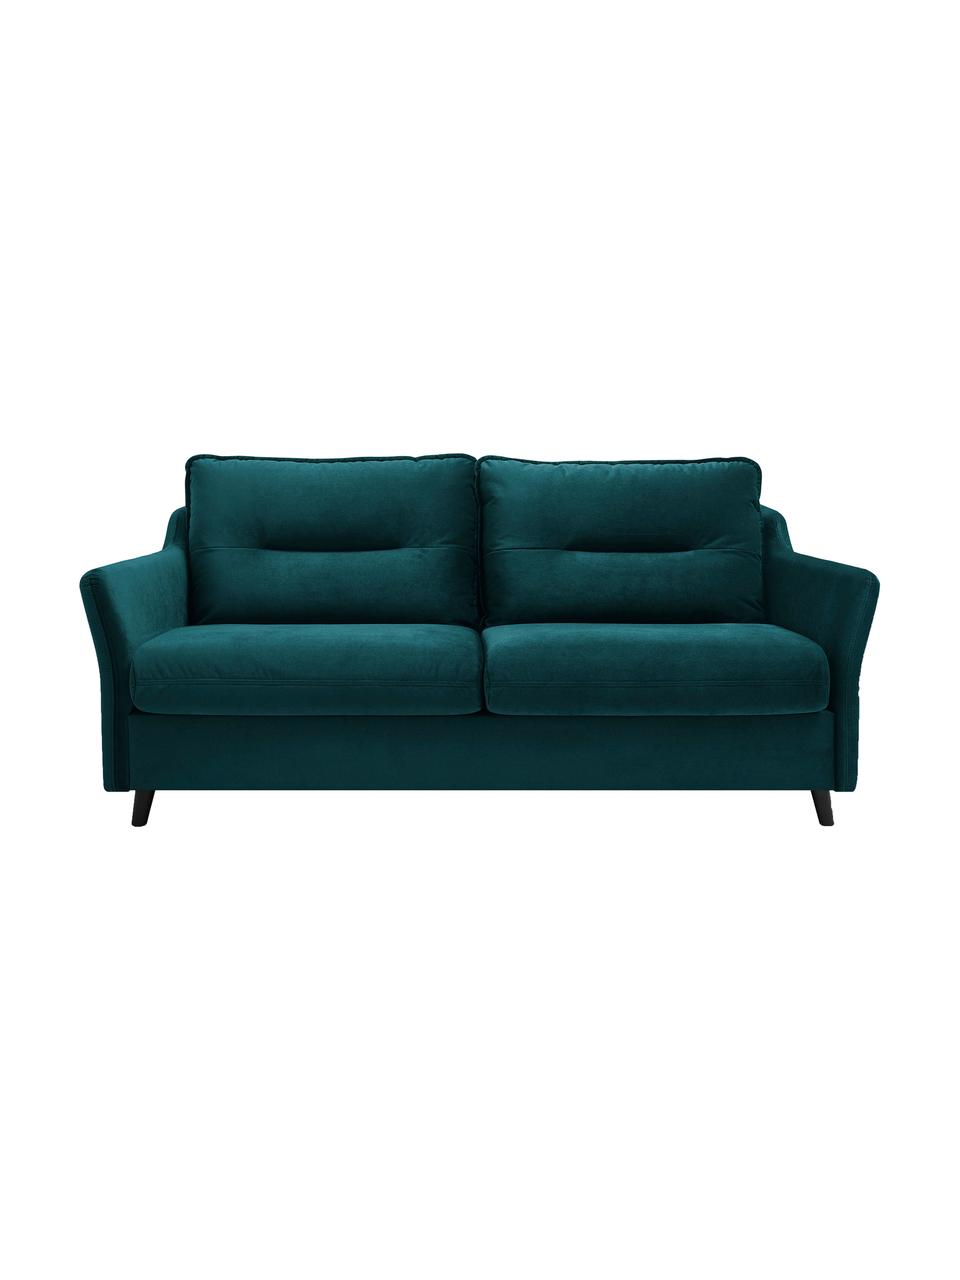 Sofa rozkładana z aksamitu Loft (3-osobowa), Tapicerka: 100% aksamit poliestrowy , Nogi: metal lakierowany, Szmaragdowy, S 191 x G 100 cm